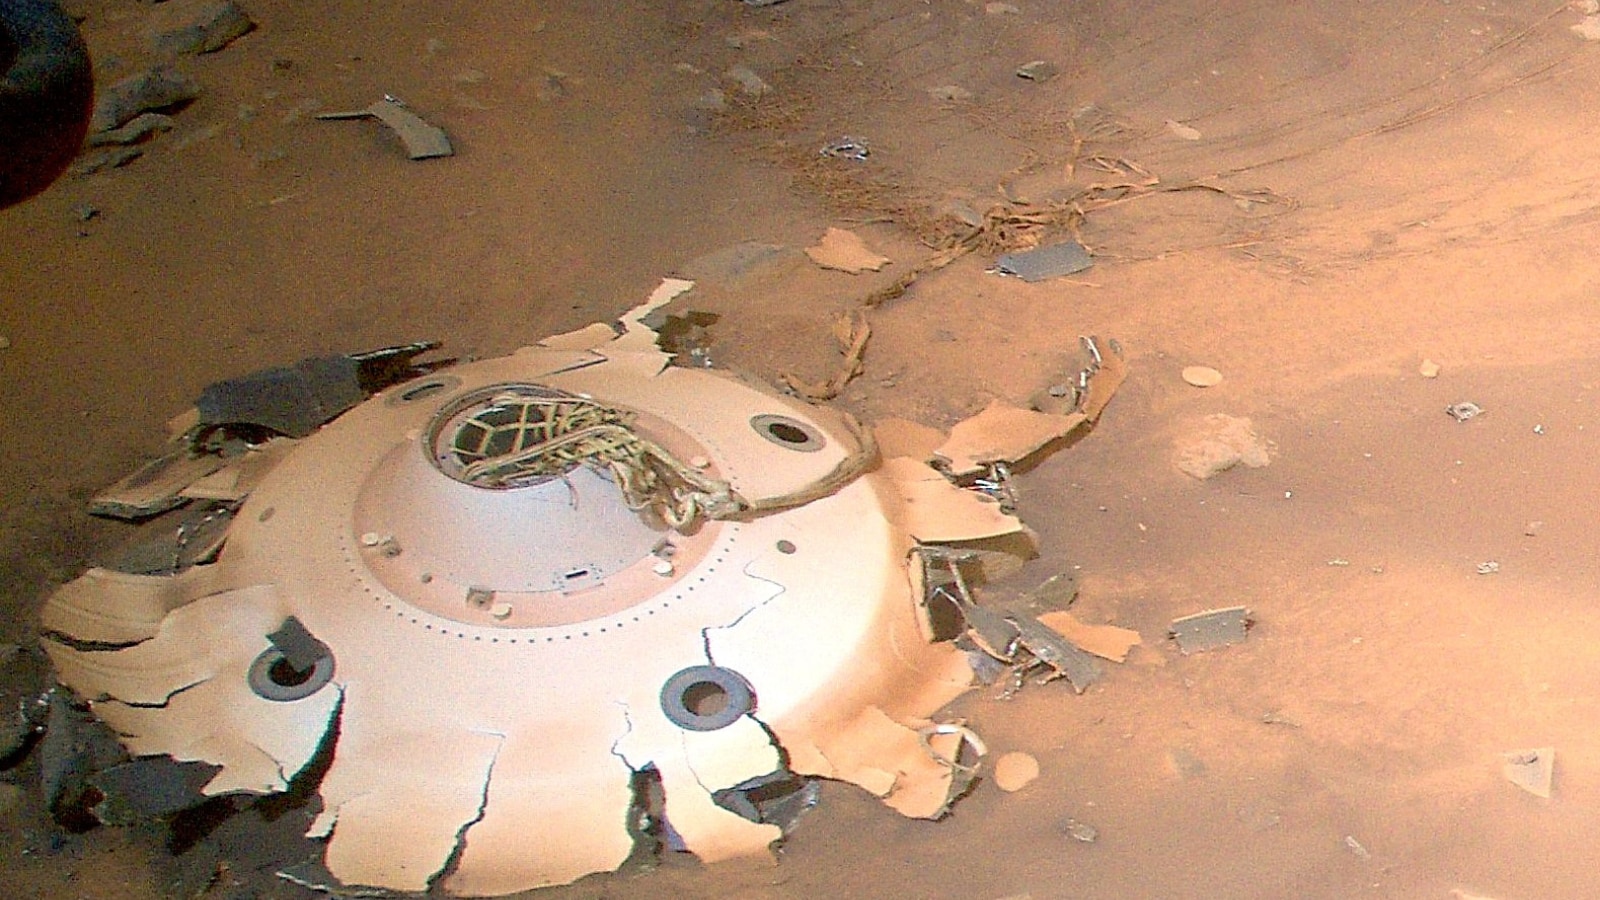 10.06 2019. Снимки Марса. Марс фото. Инопланетная Планета. Поверхность Марса НАСА.